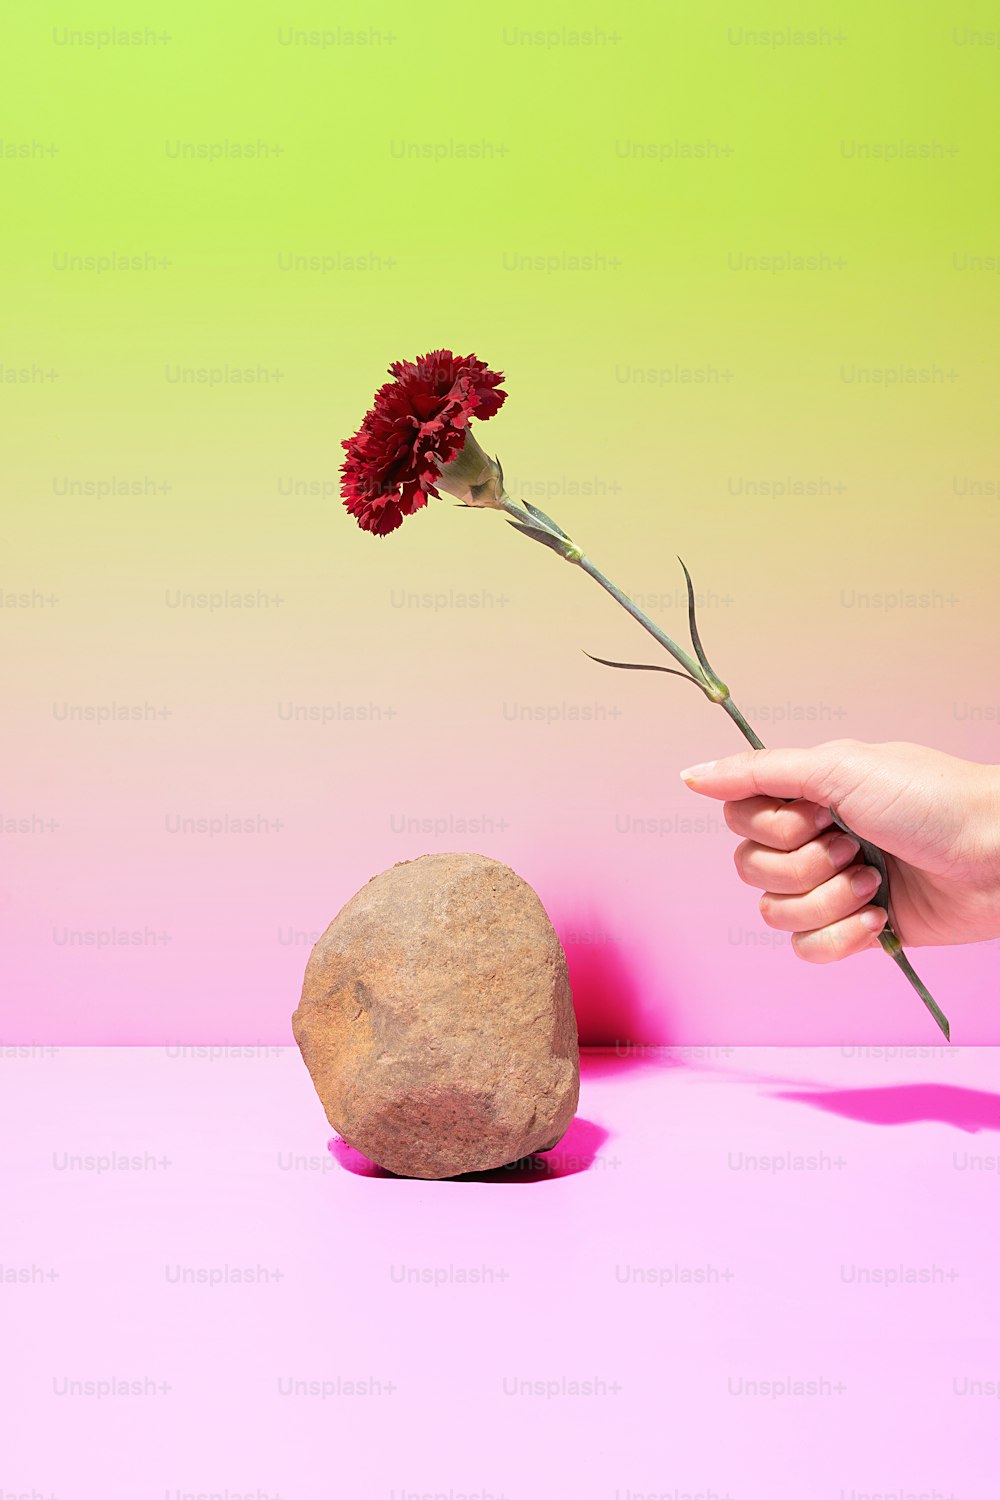 Una persona sosteniendo una flor frente a una roca